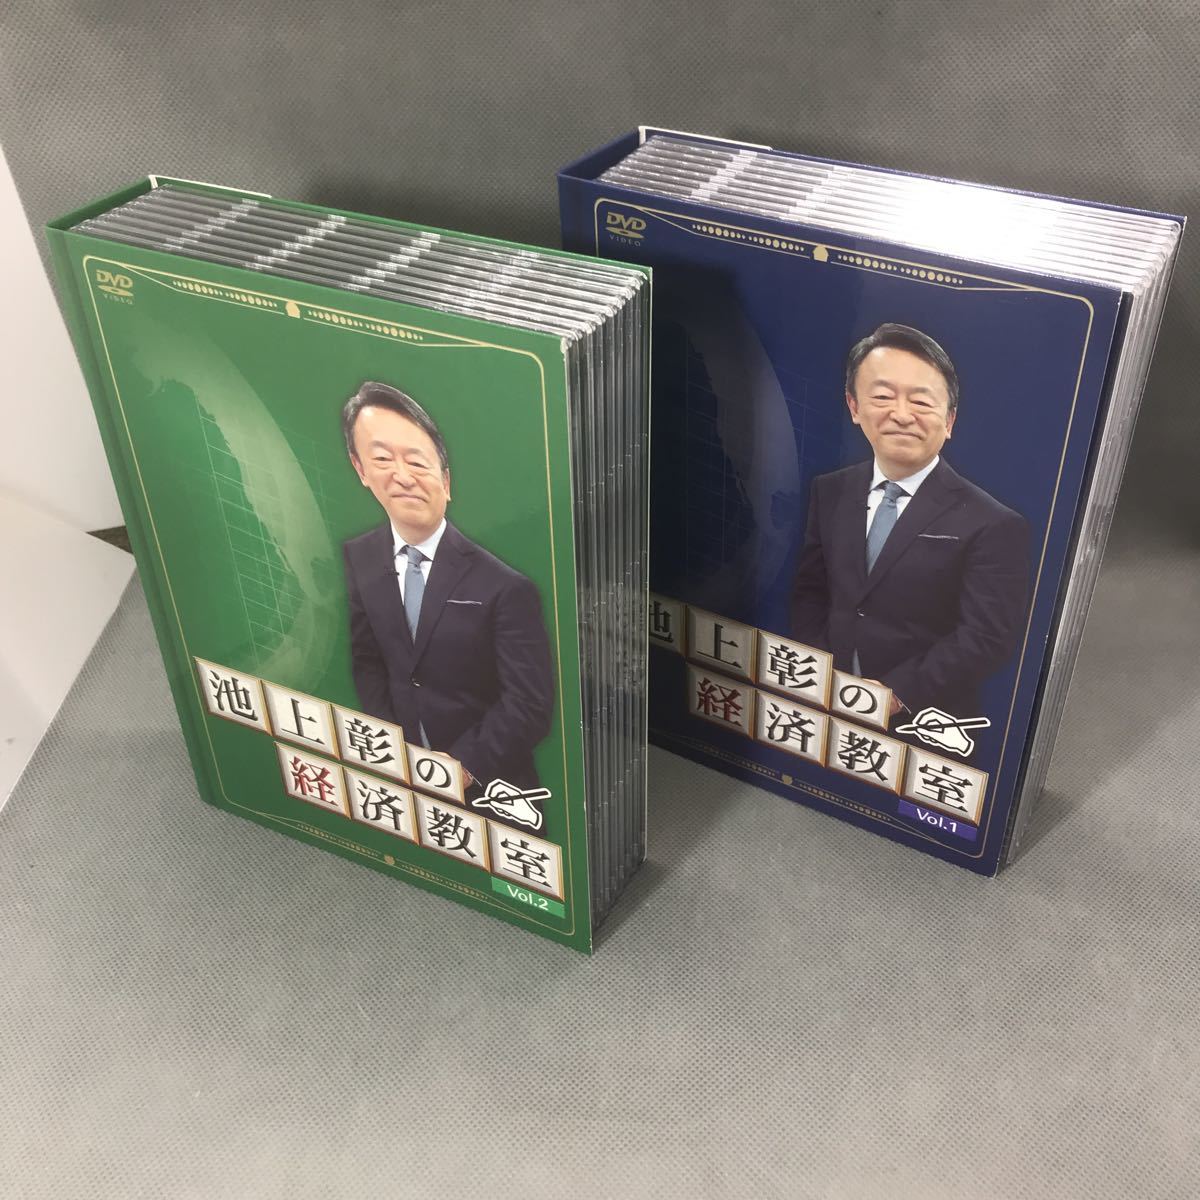 1円スタート 池上彰の経済教室 vol.1 vol.2 DVD16枚組 ユーキャン(趣味 